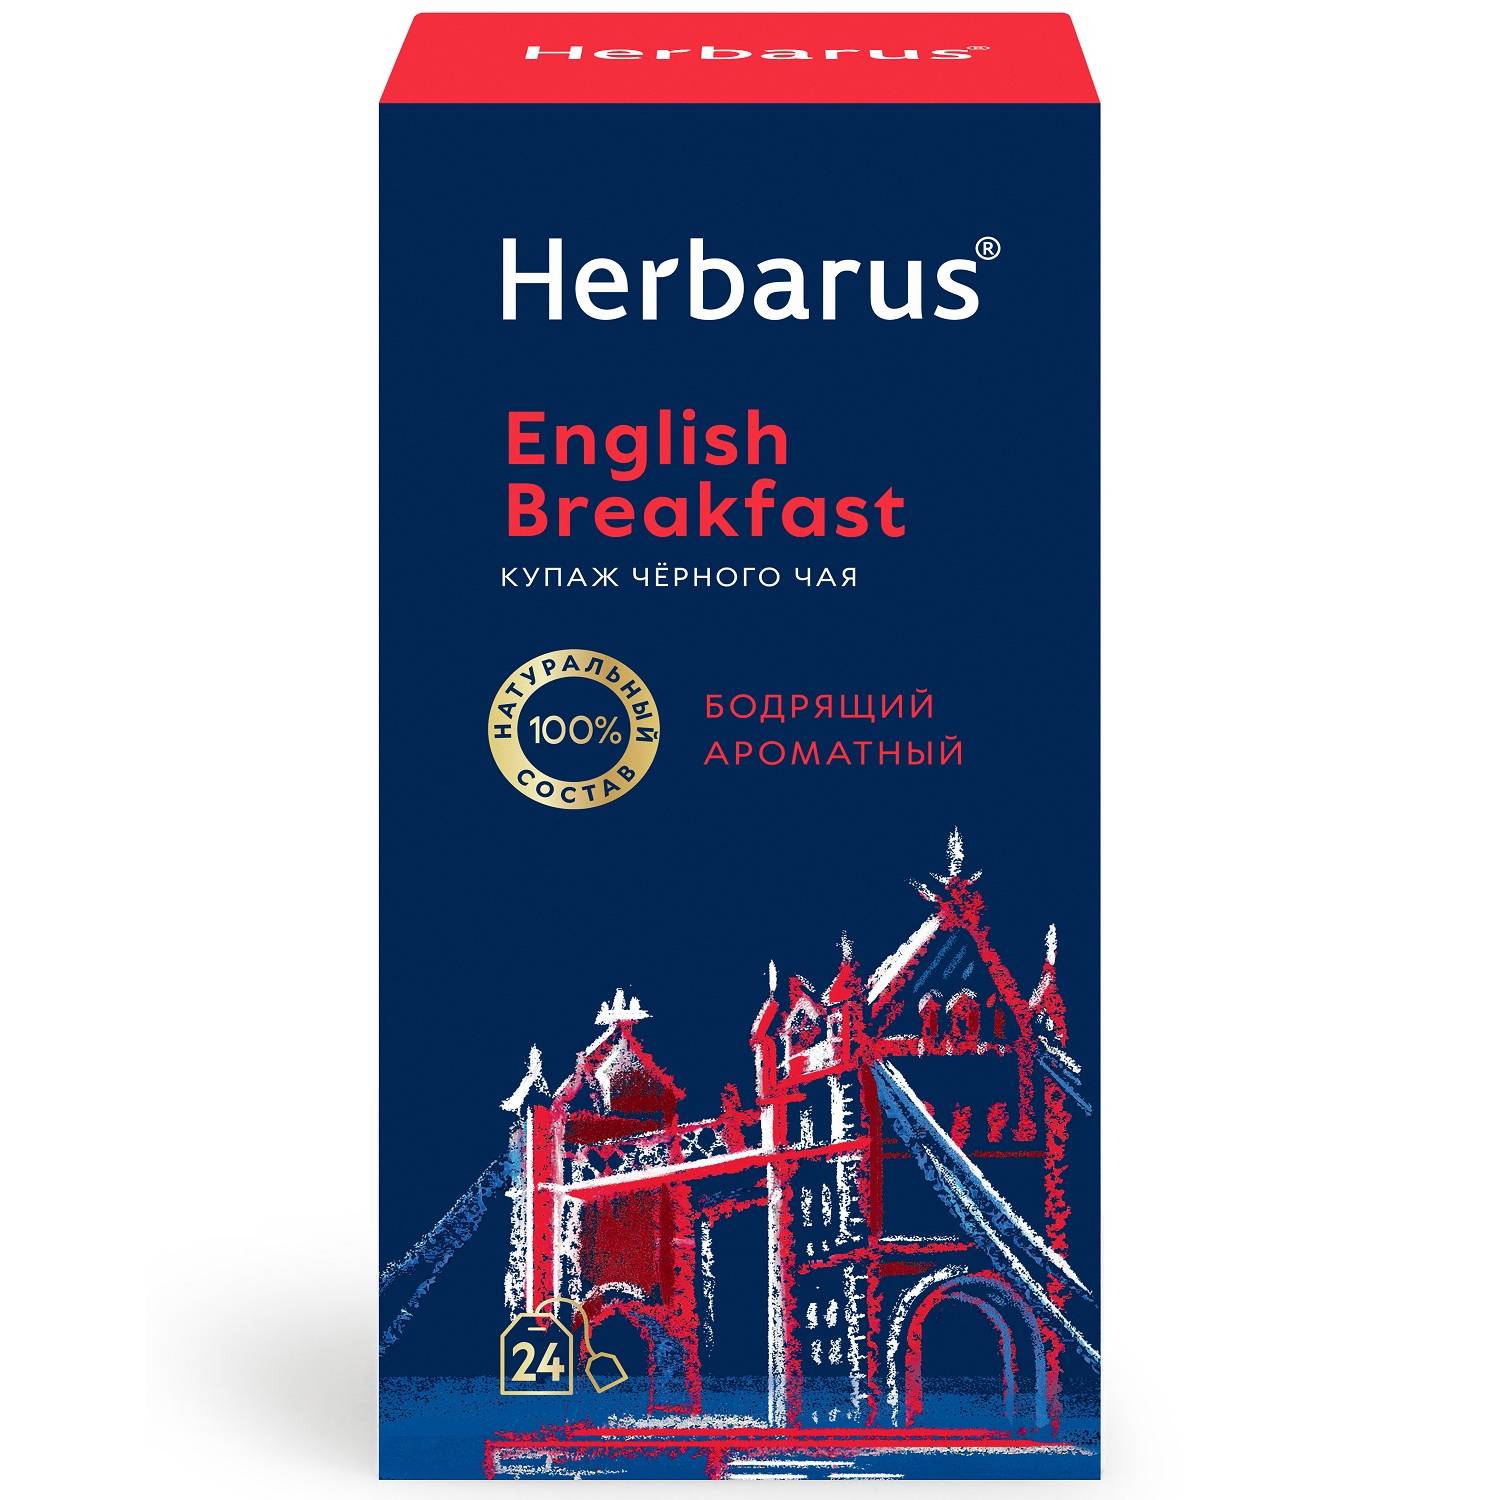 Herbarus Купаж черного чая English Breakfast, 24 пакетика х 2 г (Herbarus, Классический чай) herbarus чай улун с добавками мятный спокойный 24 шт х 2 г herbarus чай с добавками